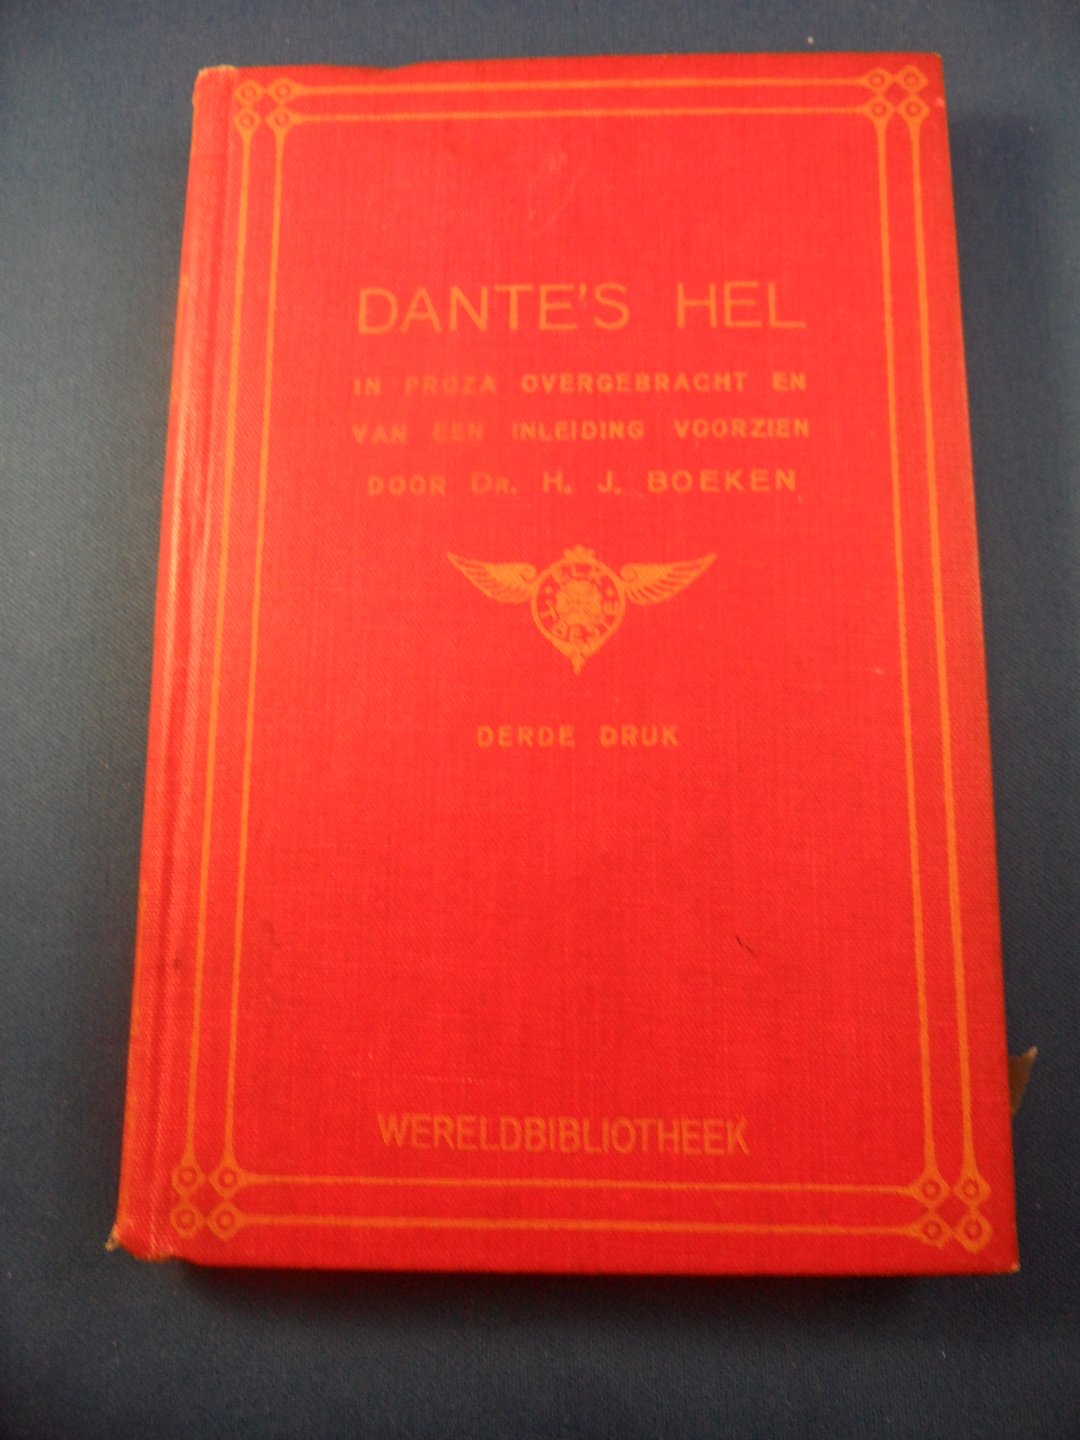 Boeken, H.J. - Dante's hel in prozaovergebracht en van een inleiding voorzien door dr. H.J. Boeken